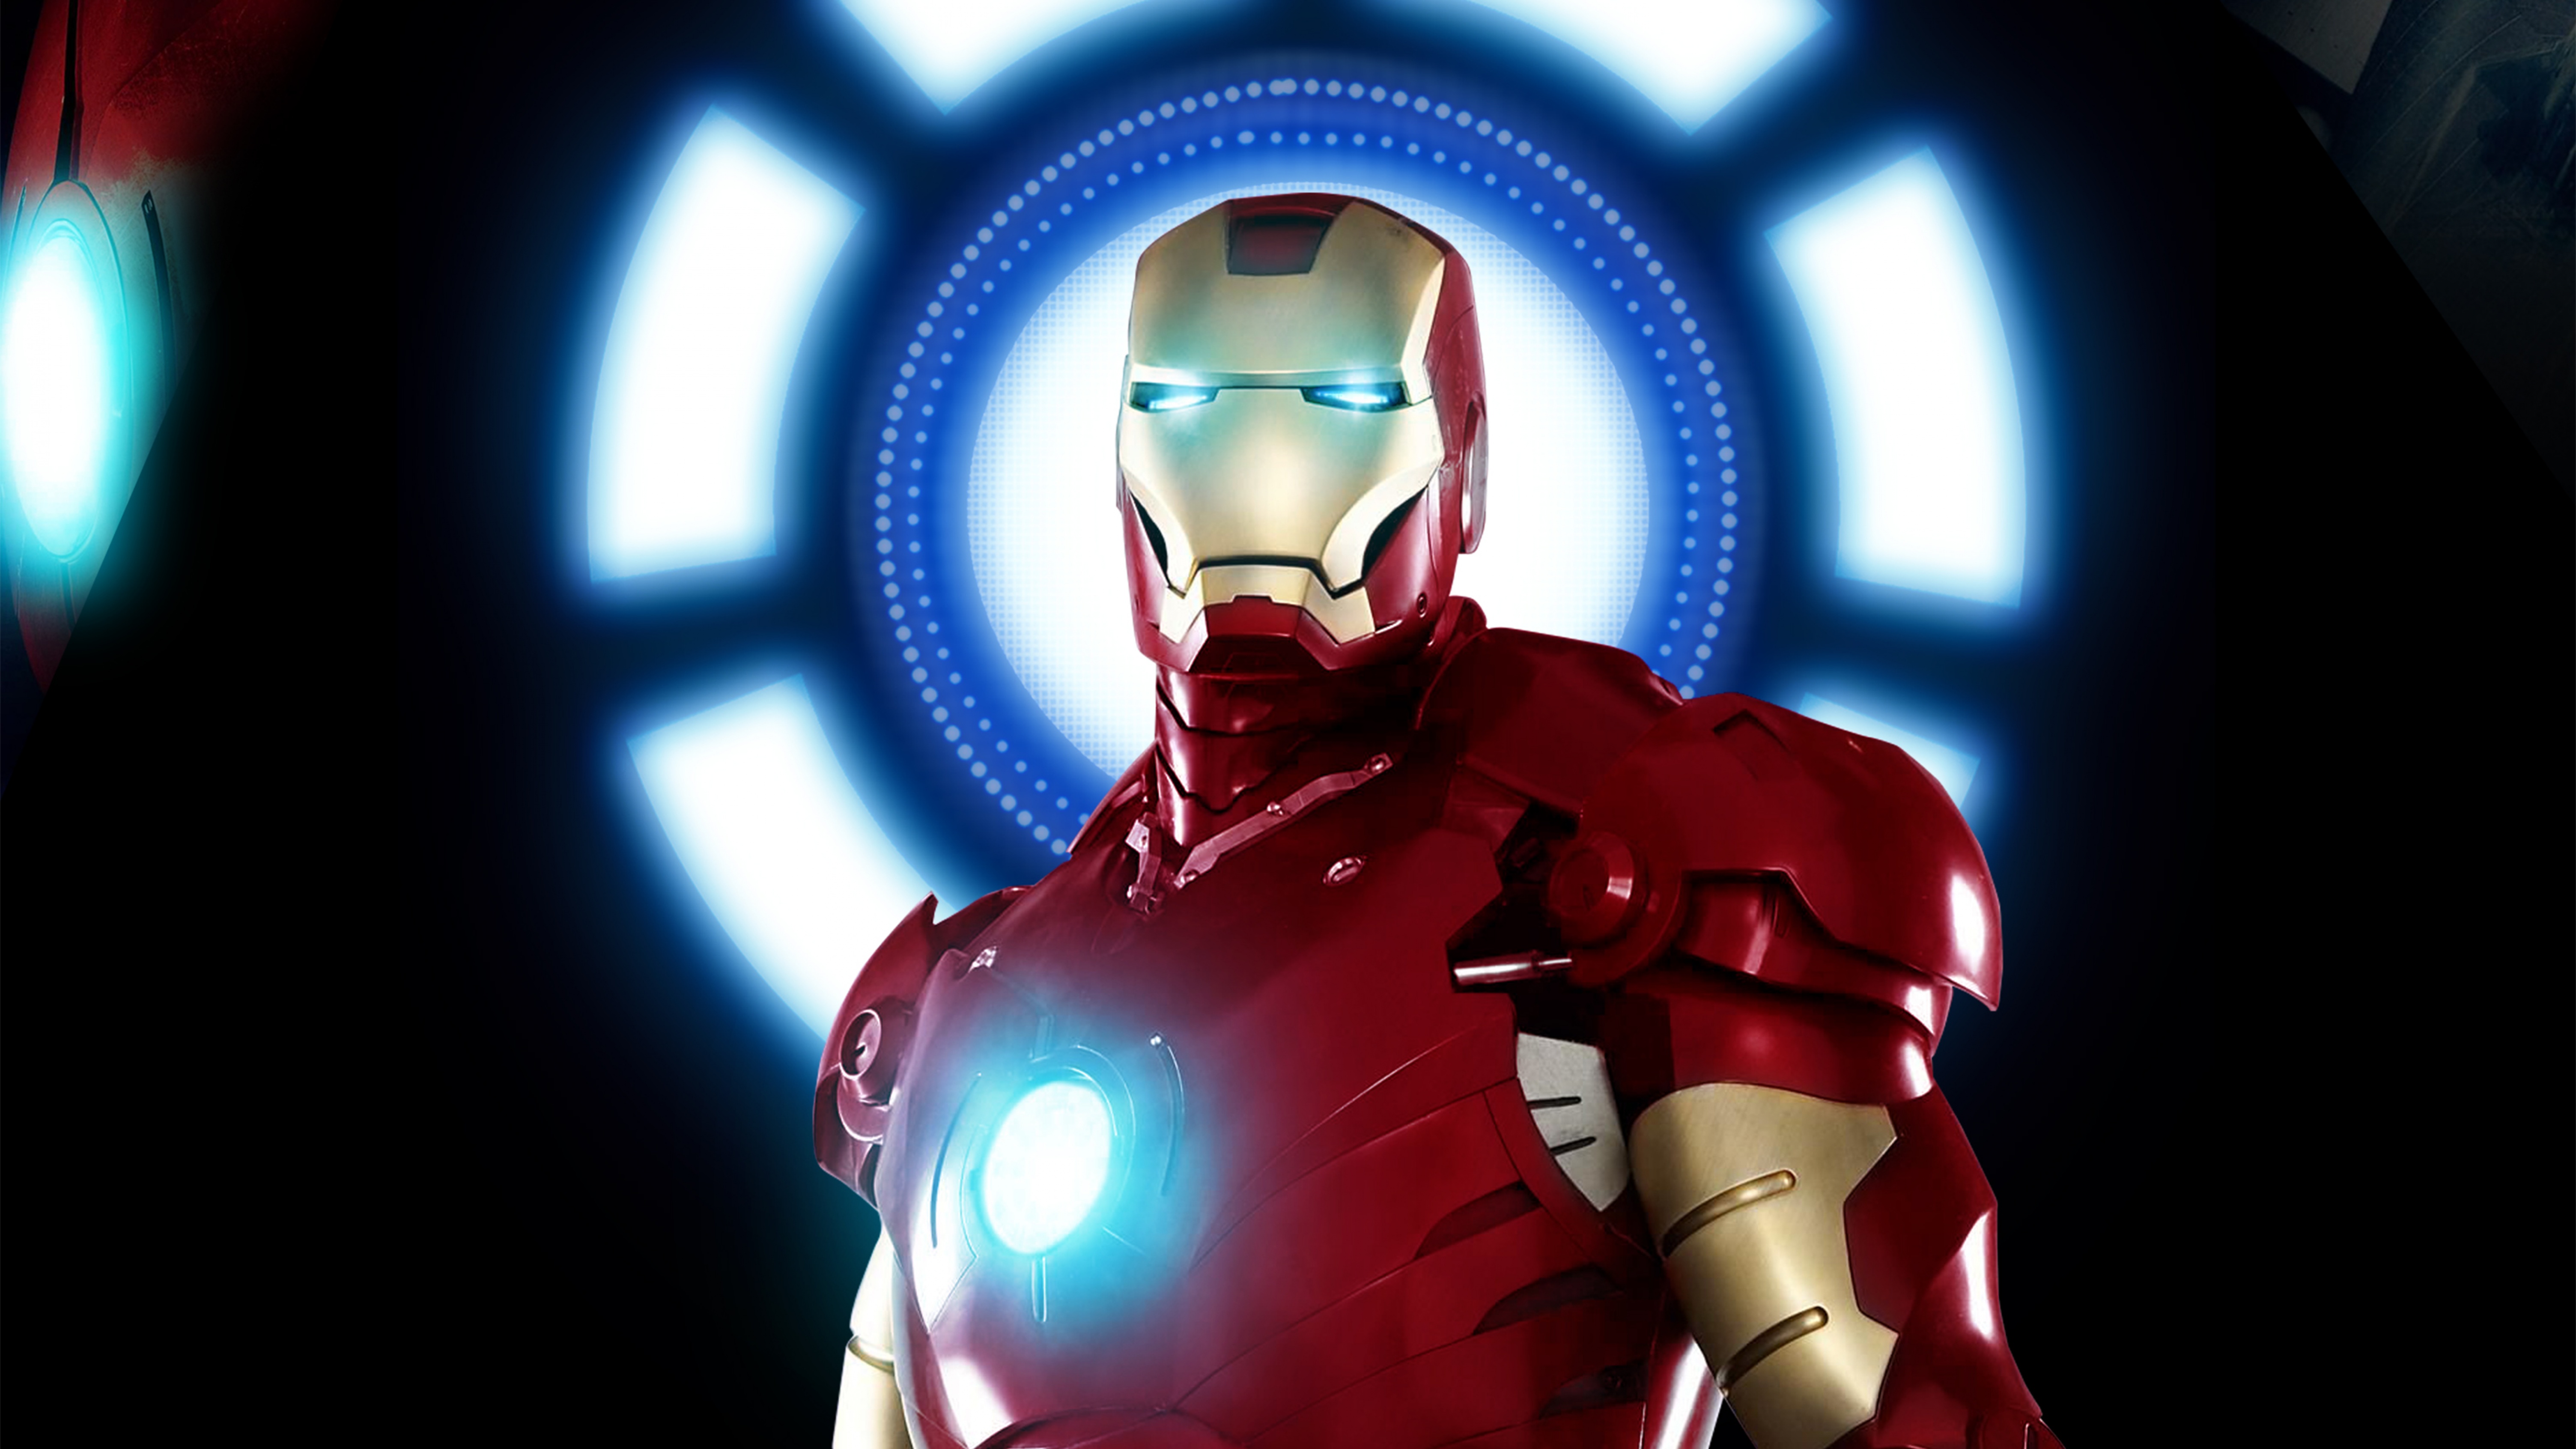 Với hình nền 4K chất lượng cao, Iron Man trở thành nhân vật chính xác và sống động nhất trong bộ sưu tập siêu anh hùng Marvel này. Tận hưởng những khoảnh khắc đáng kinh ngạc của phim ảnh và trải nghiệm cảm giác đắm chìm trong thế giới siêu anh hùng này.